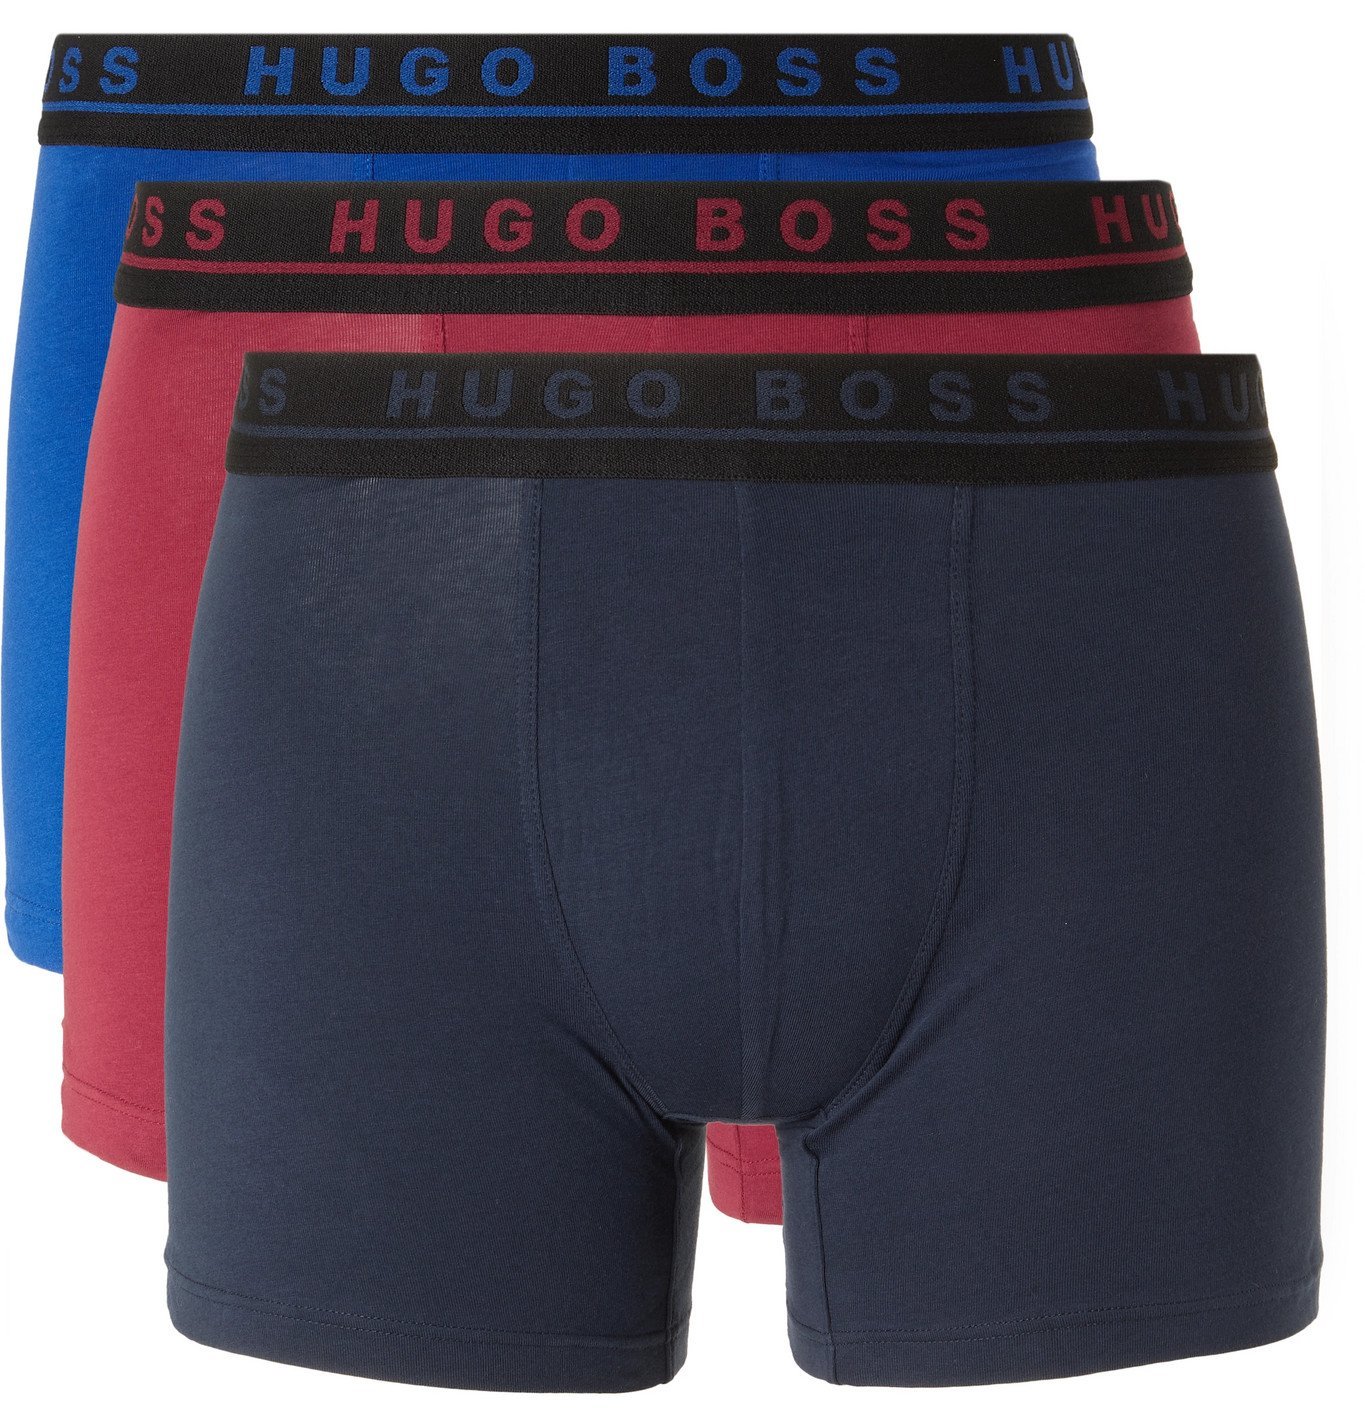 hugo boss three pack